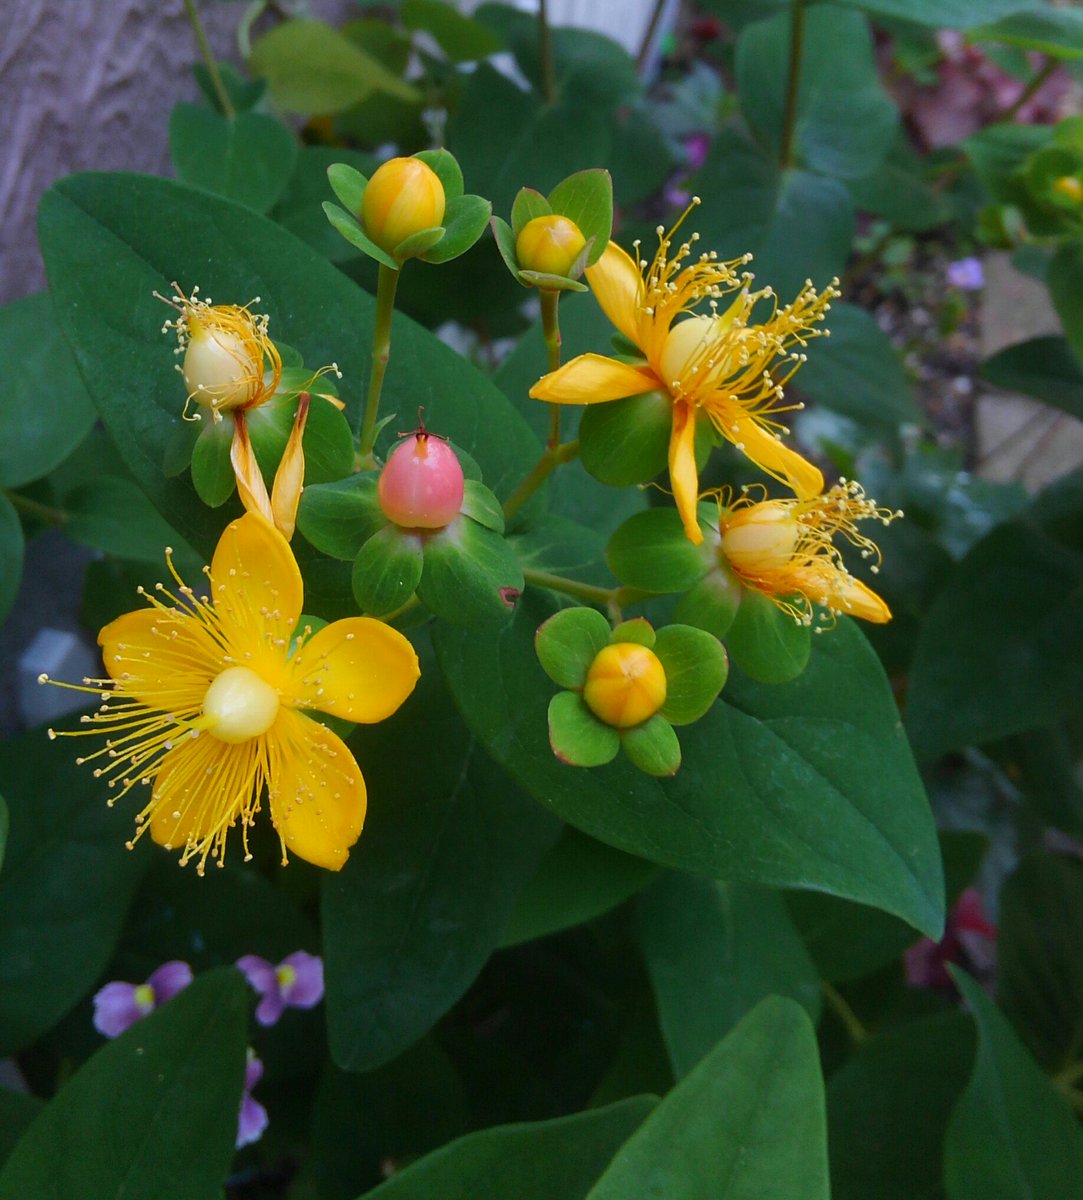 ミント 庭の花 ヒペリカム コボウズオトギリ 黄色い玉のようなつぼみから花が咲いて赤い実になる 色の変化が楽しい花 ヒペリカム コボウズオトギリ ガーデニング